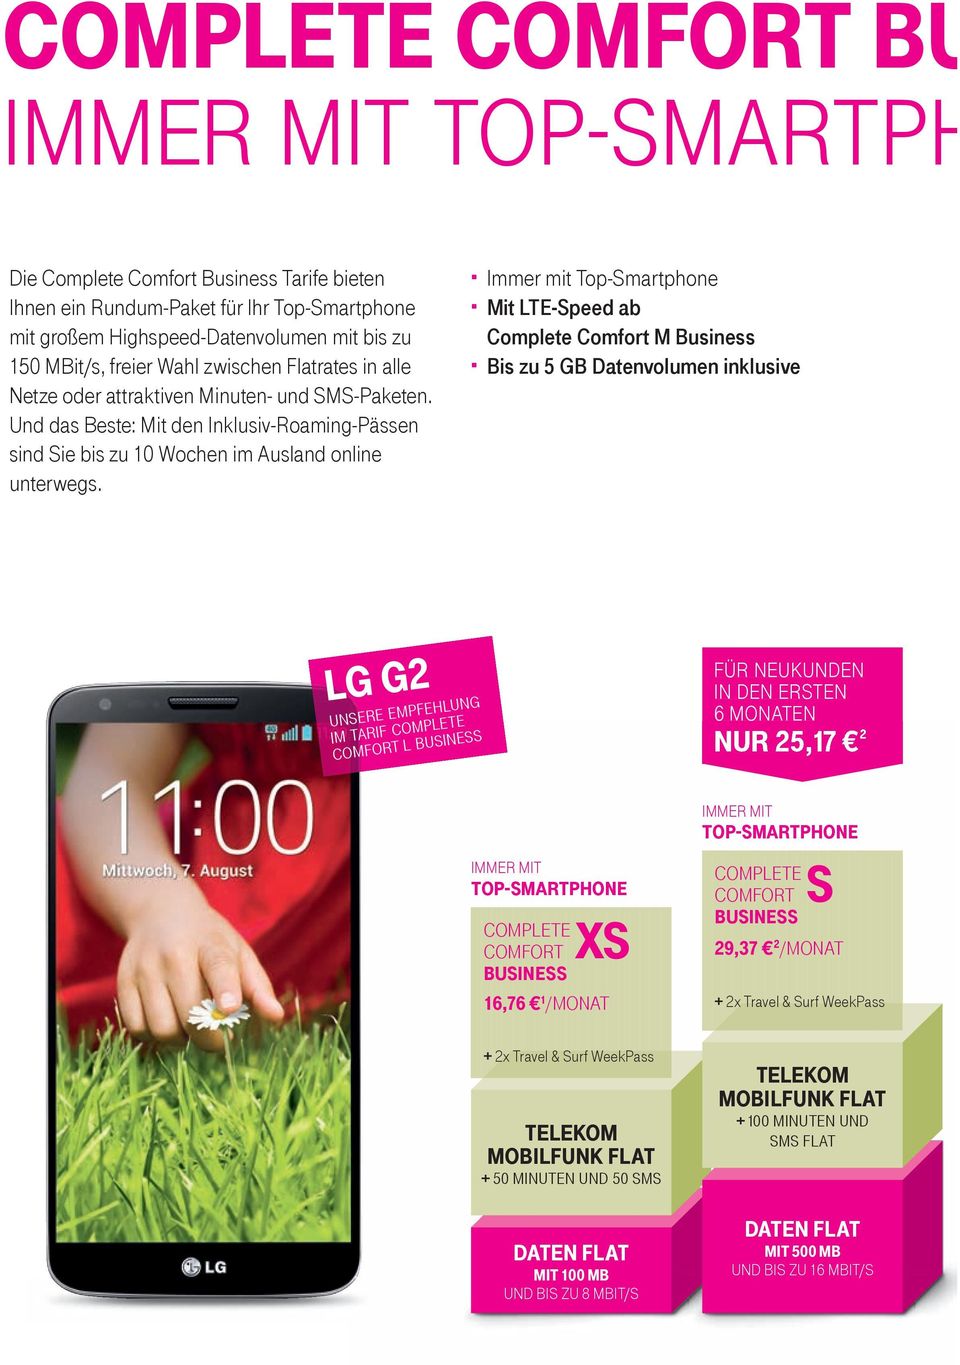 Immer mit Top-Smartphone Mit LTE-Speed ab Complete Comfort M Business Bis zu 5 GB Datenvolumen inklusive LG G2 unsere empfehlung IM tarif complete comfort l business für neukunden In den ersten 6